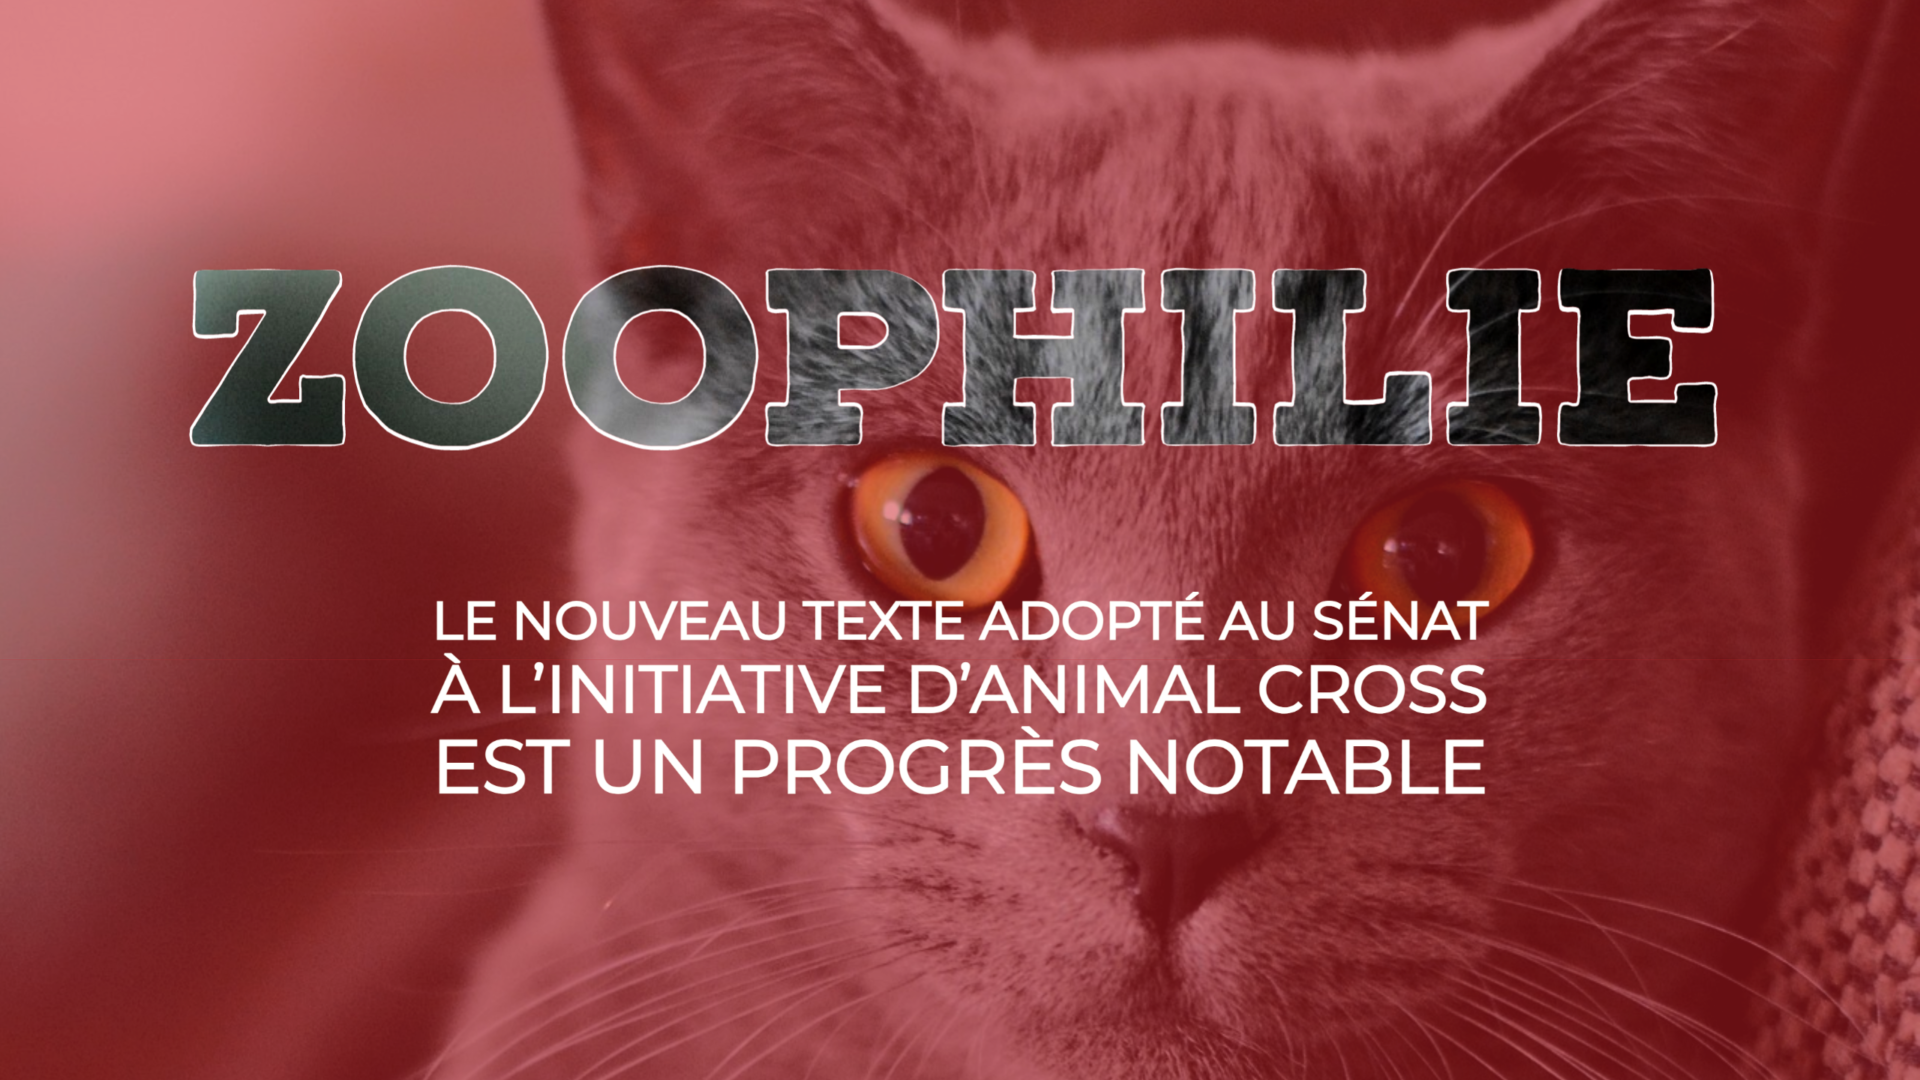 Zoophilie : le nouveau texte adopté au Sénat à l’initiative d’Animal Cross est un progrès notable